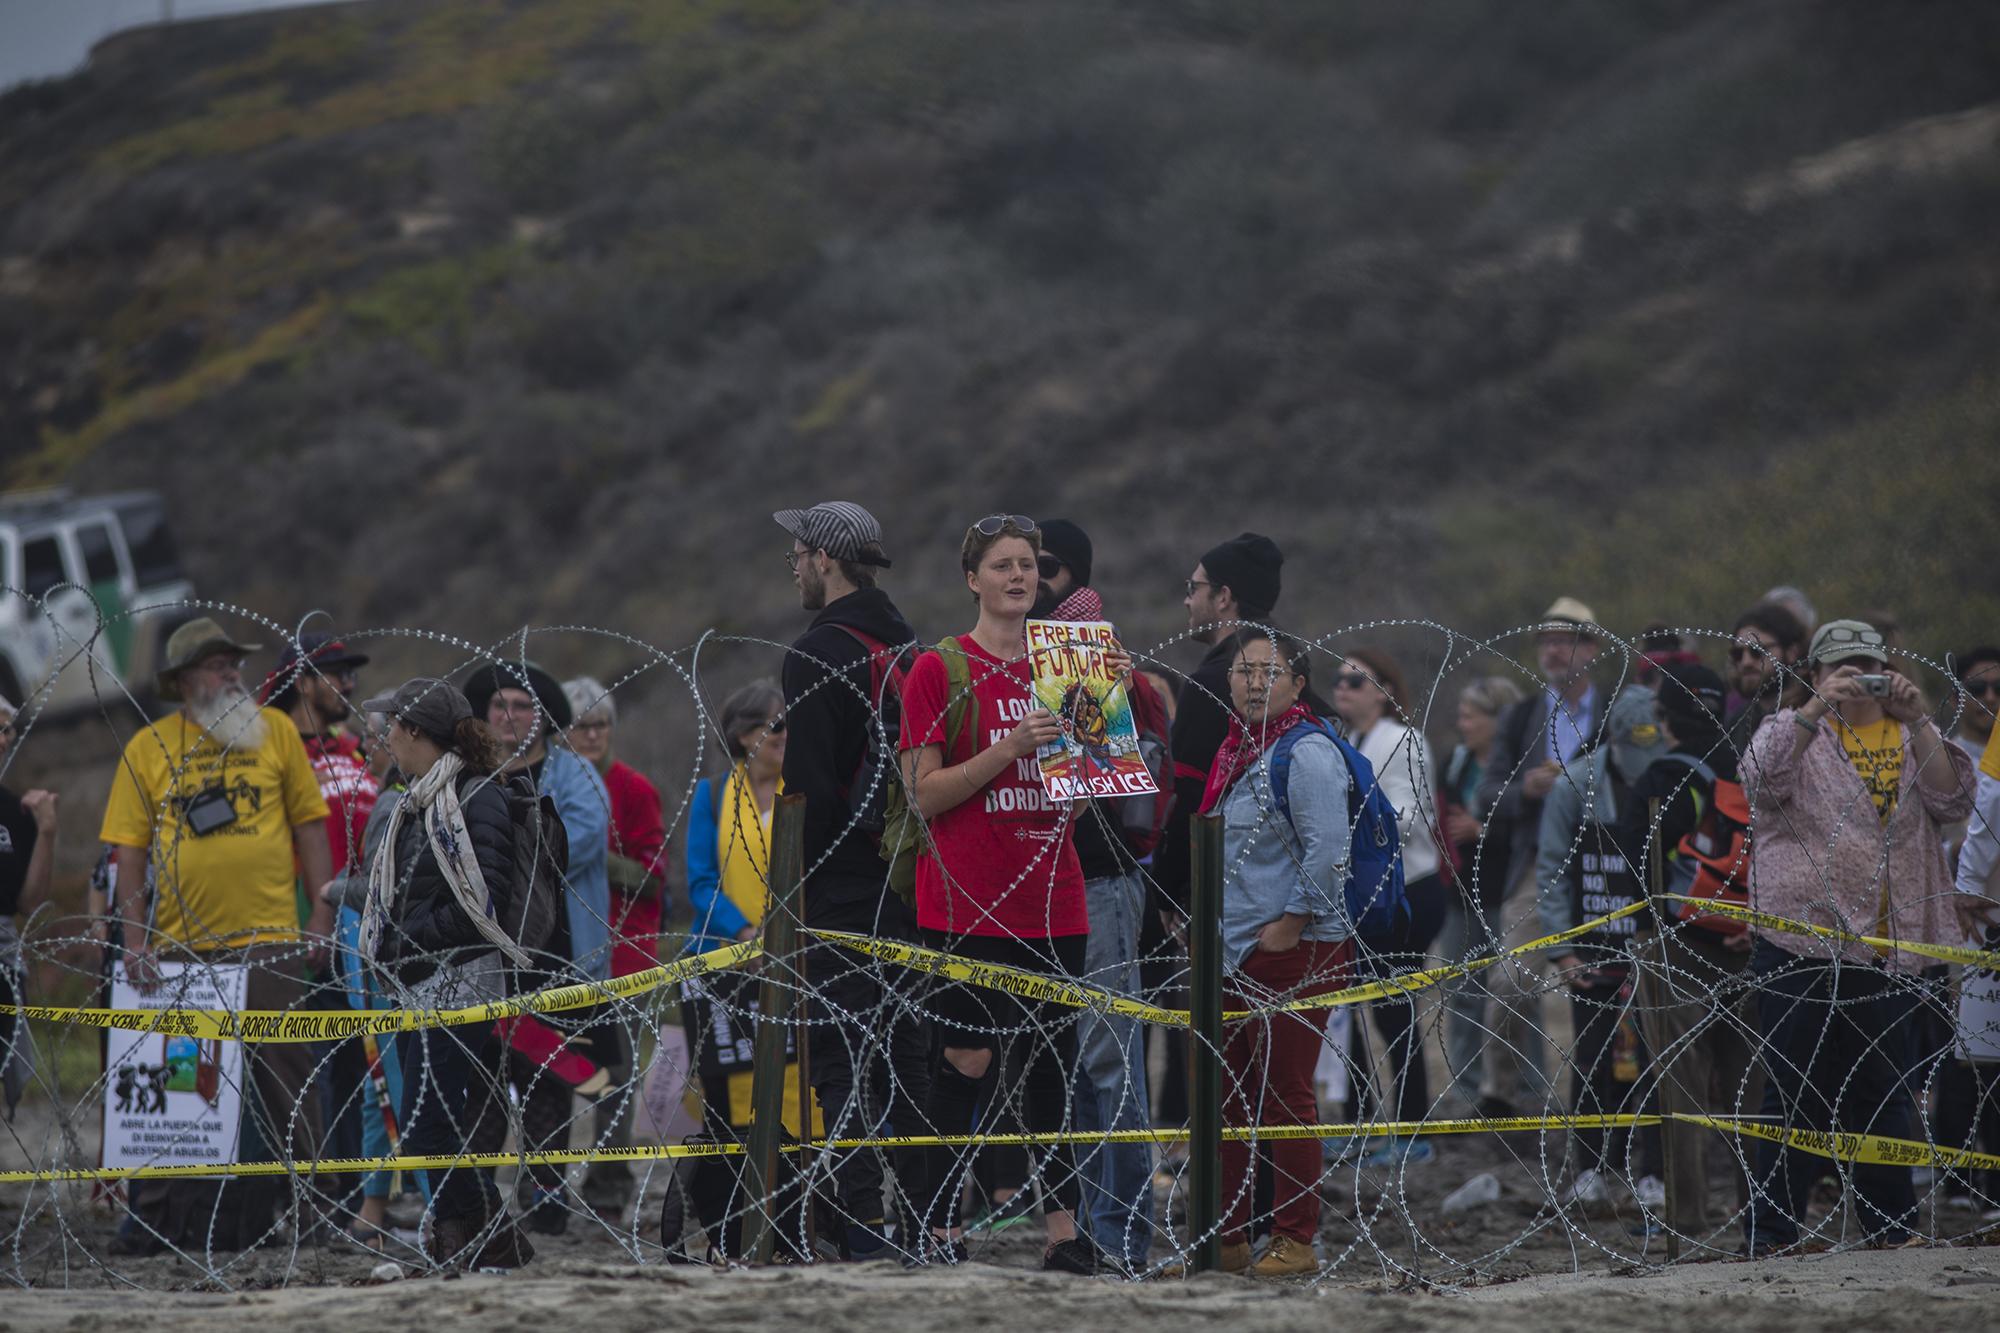 Los manifestantes se pronunciaron en favor de la caravana de migrantes centroamericanos. Muchos de ellos han solicitado refugio a Estados Unidos y permanecen en Tijuana desde mediados de noviembre.